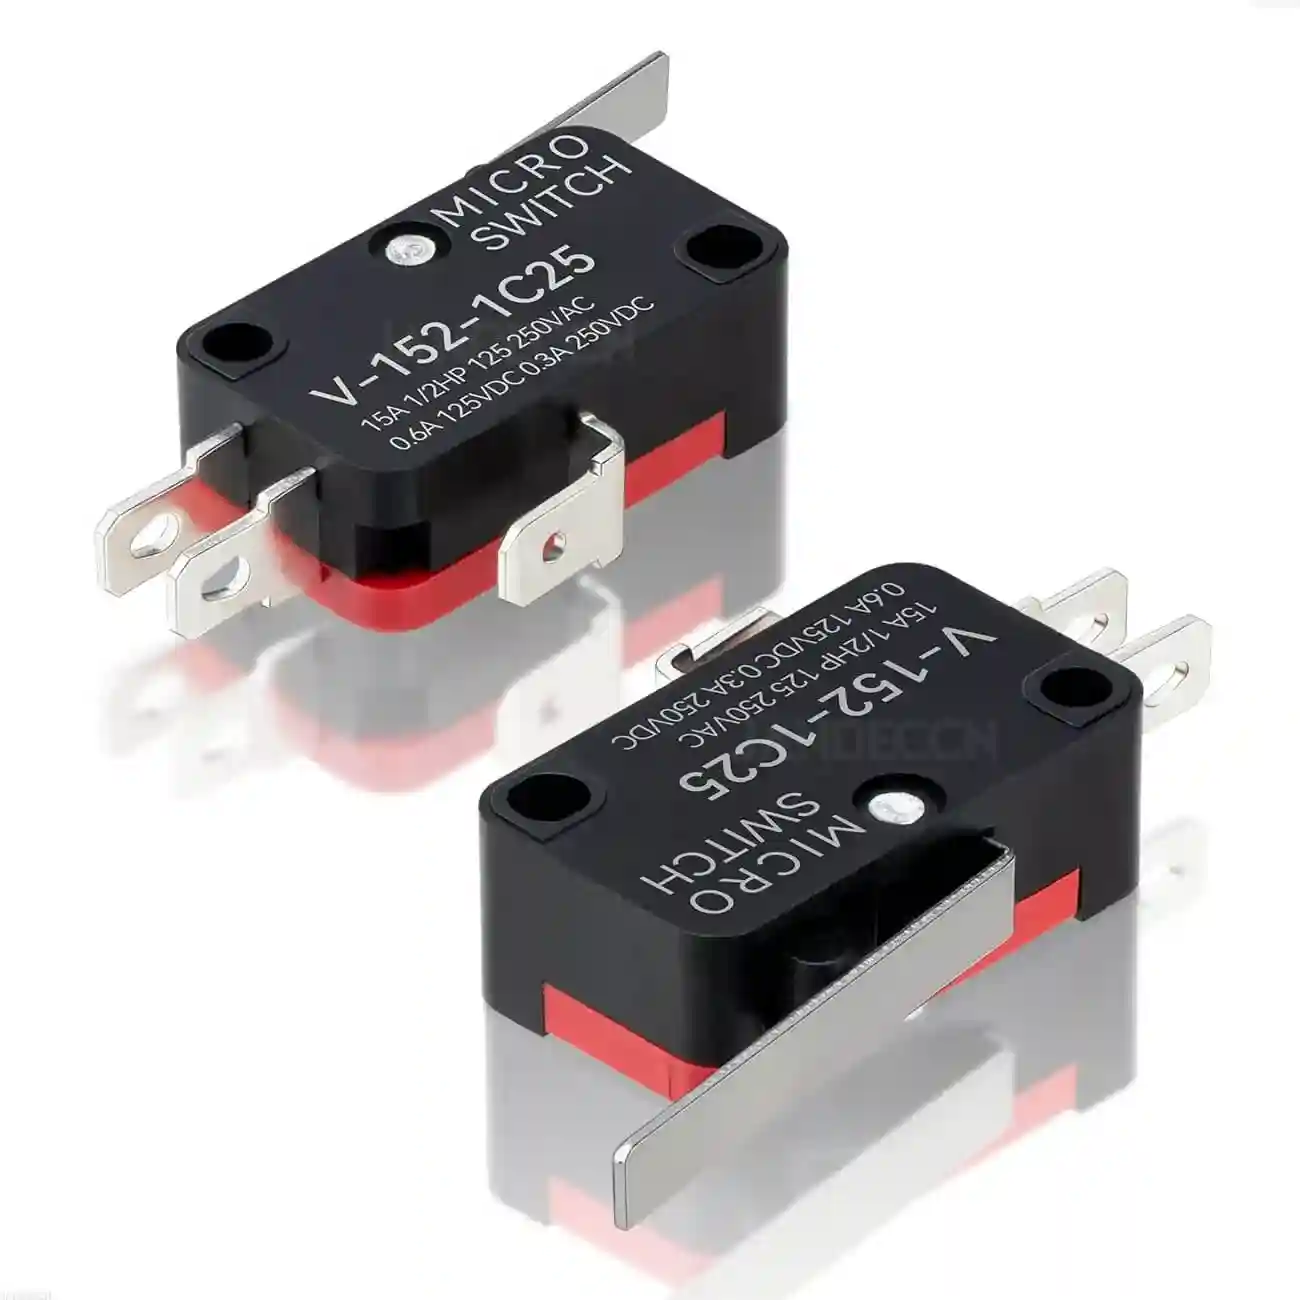 Micro switch mini interruptores táctiles son ampliamente utilizados en productos electrónicos de automóviles, equipos de comunicación, instrumentos de prueba, pequeños electrodomésticos 